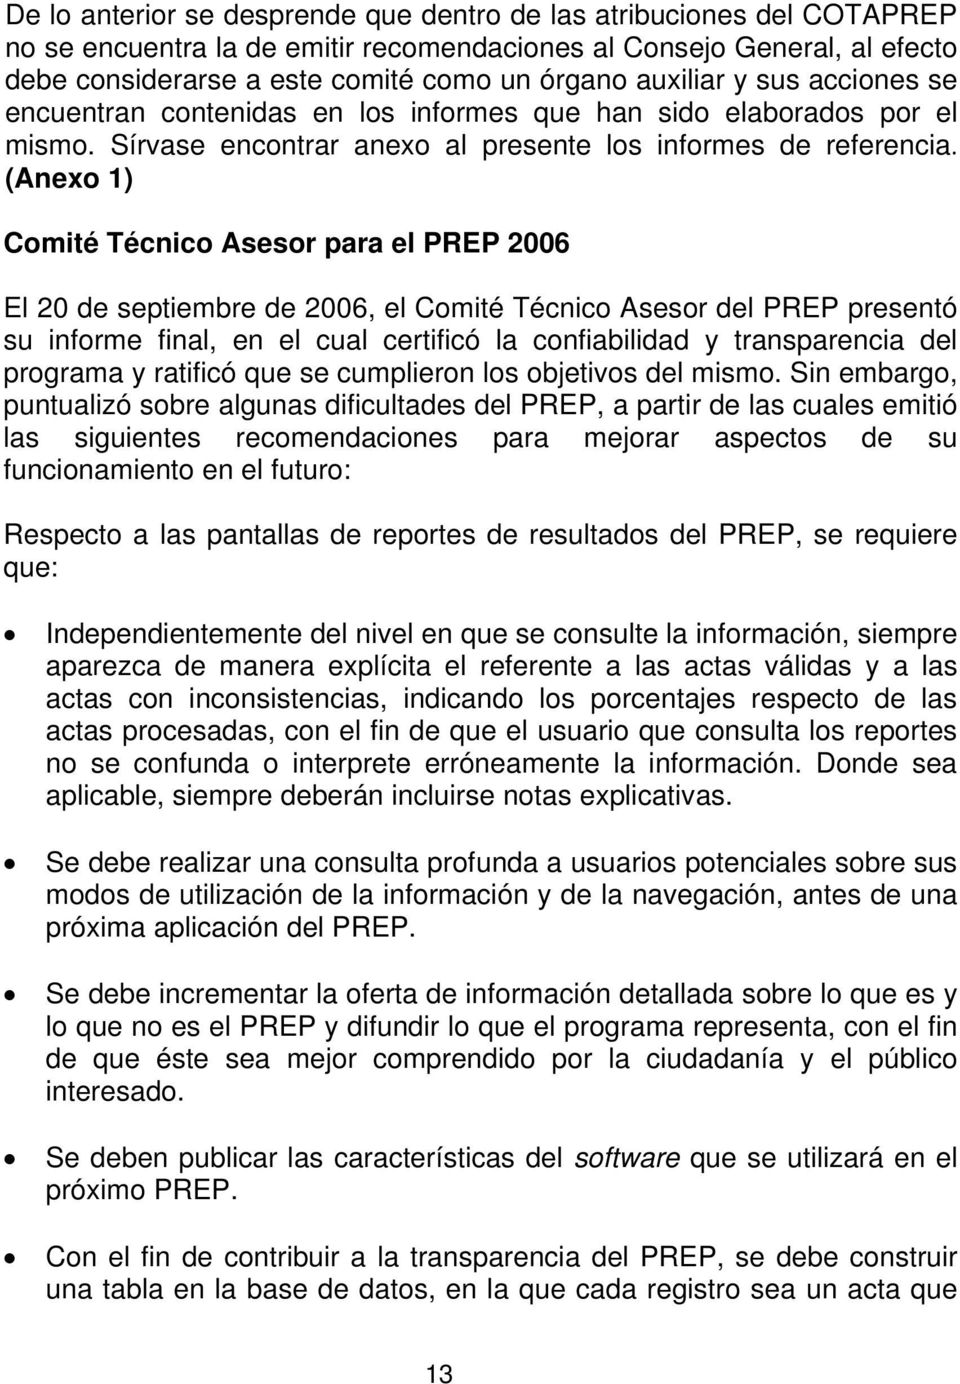 (Anexo 1) Comité Técnico Asesor para el PREP 2006 El 20 de septiembre de 2006, el Comité Técnico Asesor del PREP presentó su informe final, en el cual certificó la confiabilidad y transparencia del